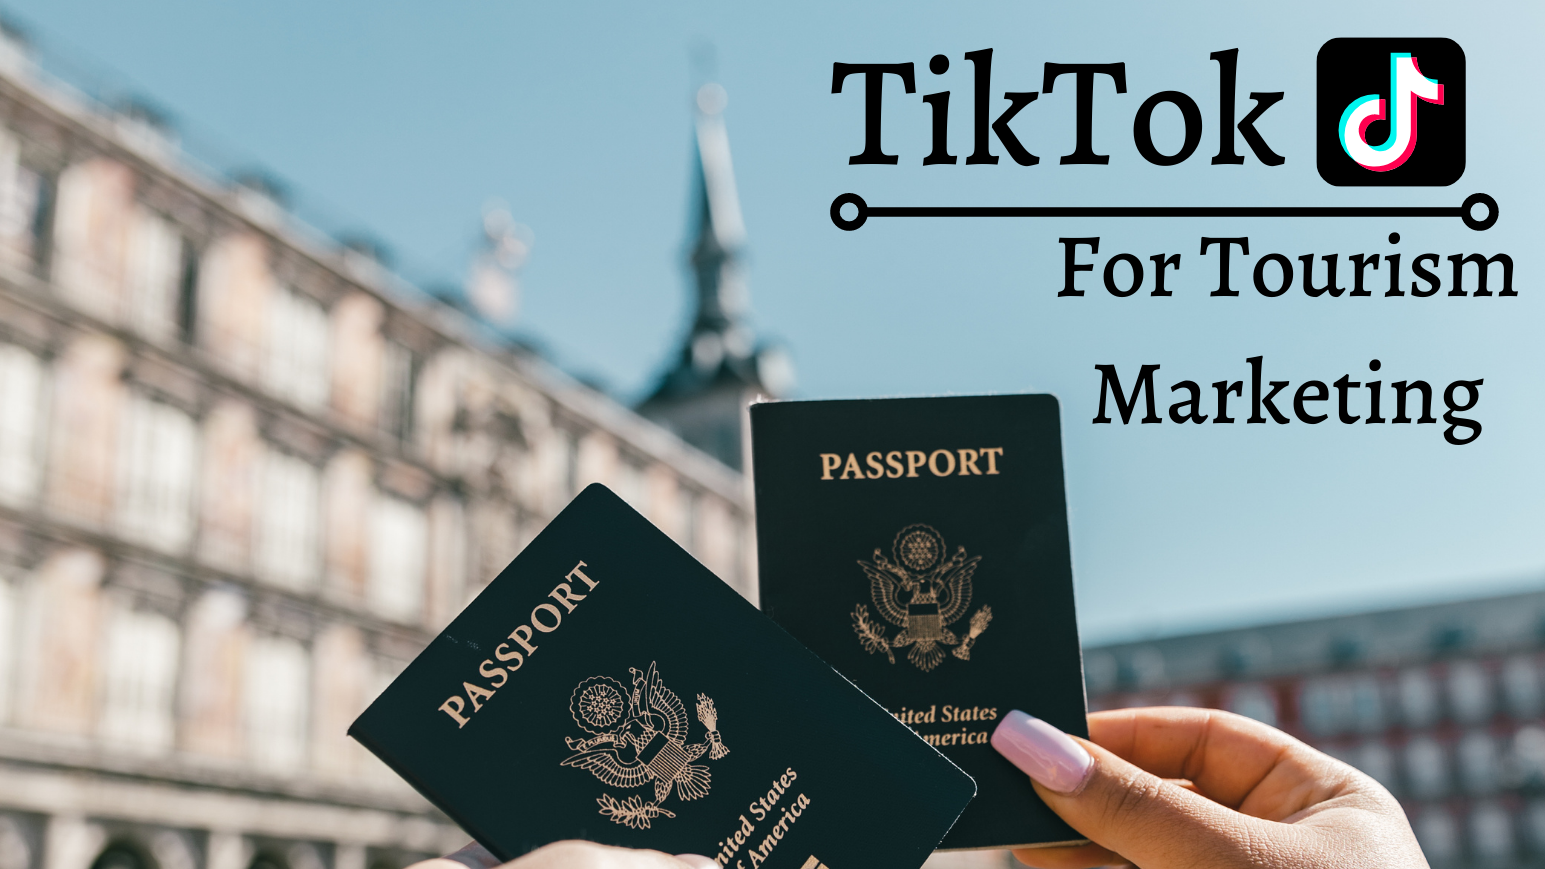 TikTok for Tourism Marketing